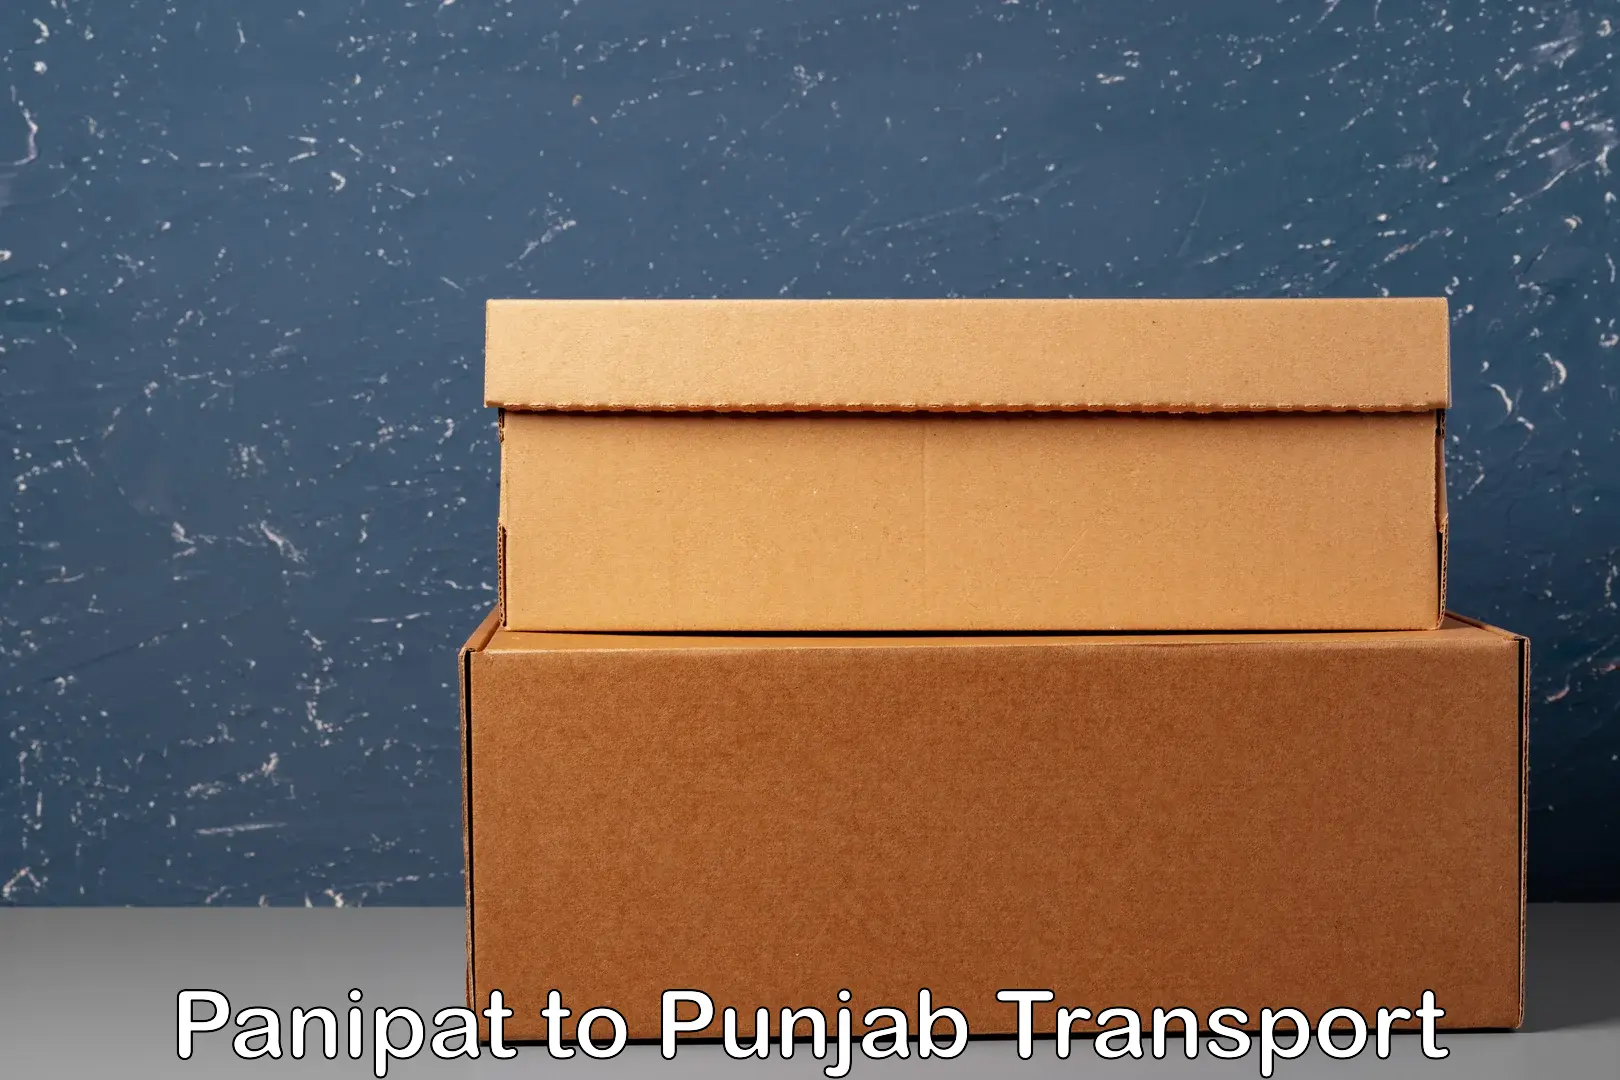 Land transport services in Panipat to Punjab